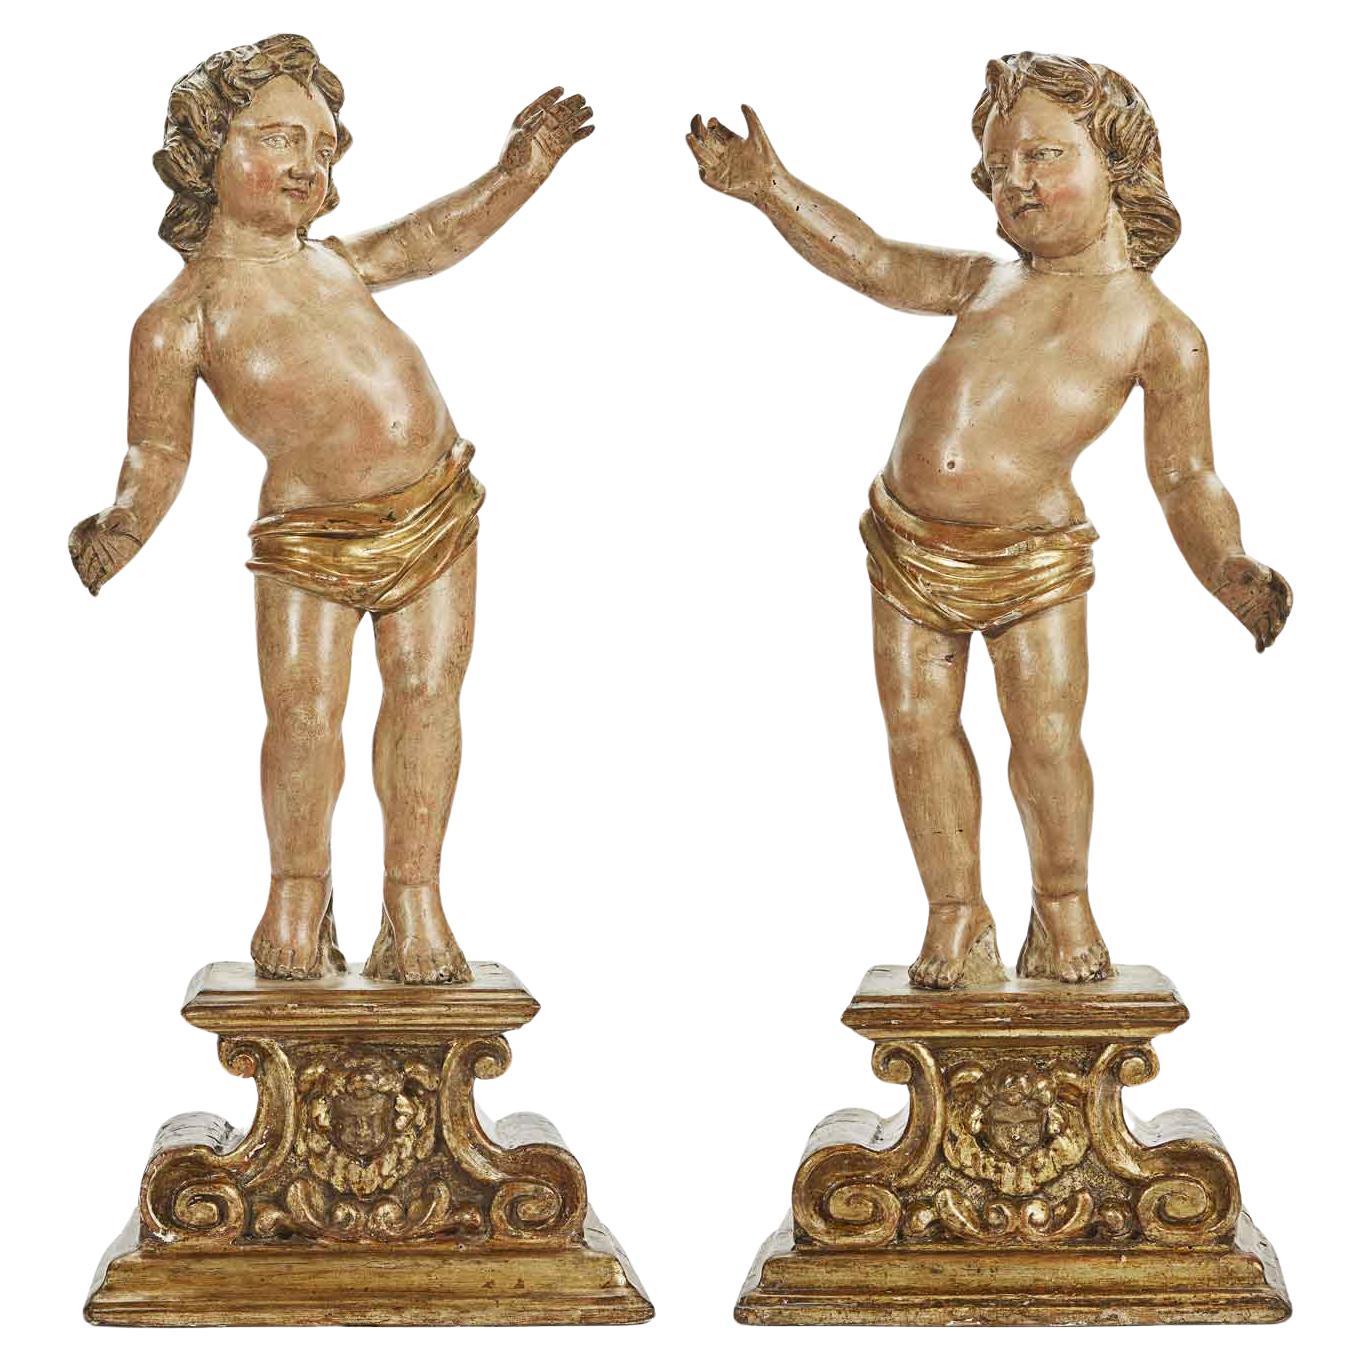 Engelspaar auf geschnitztem Sockel aus der Zeit um 1700